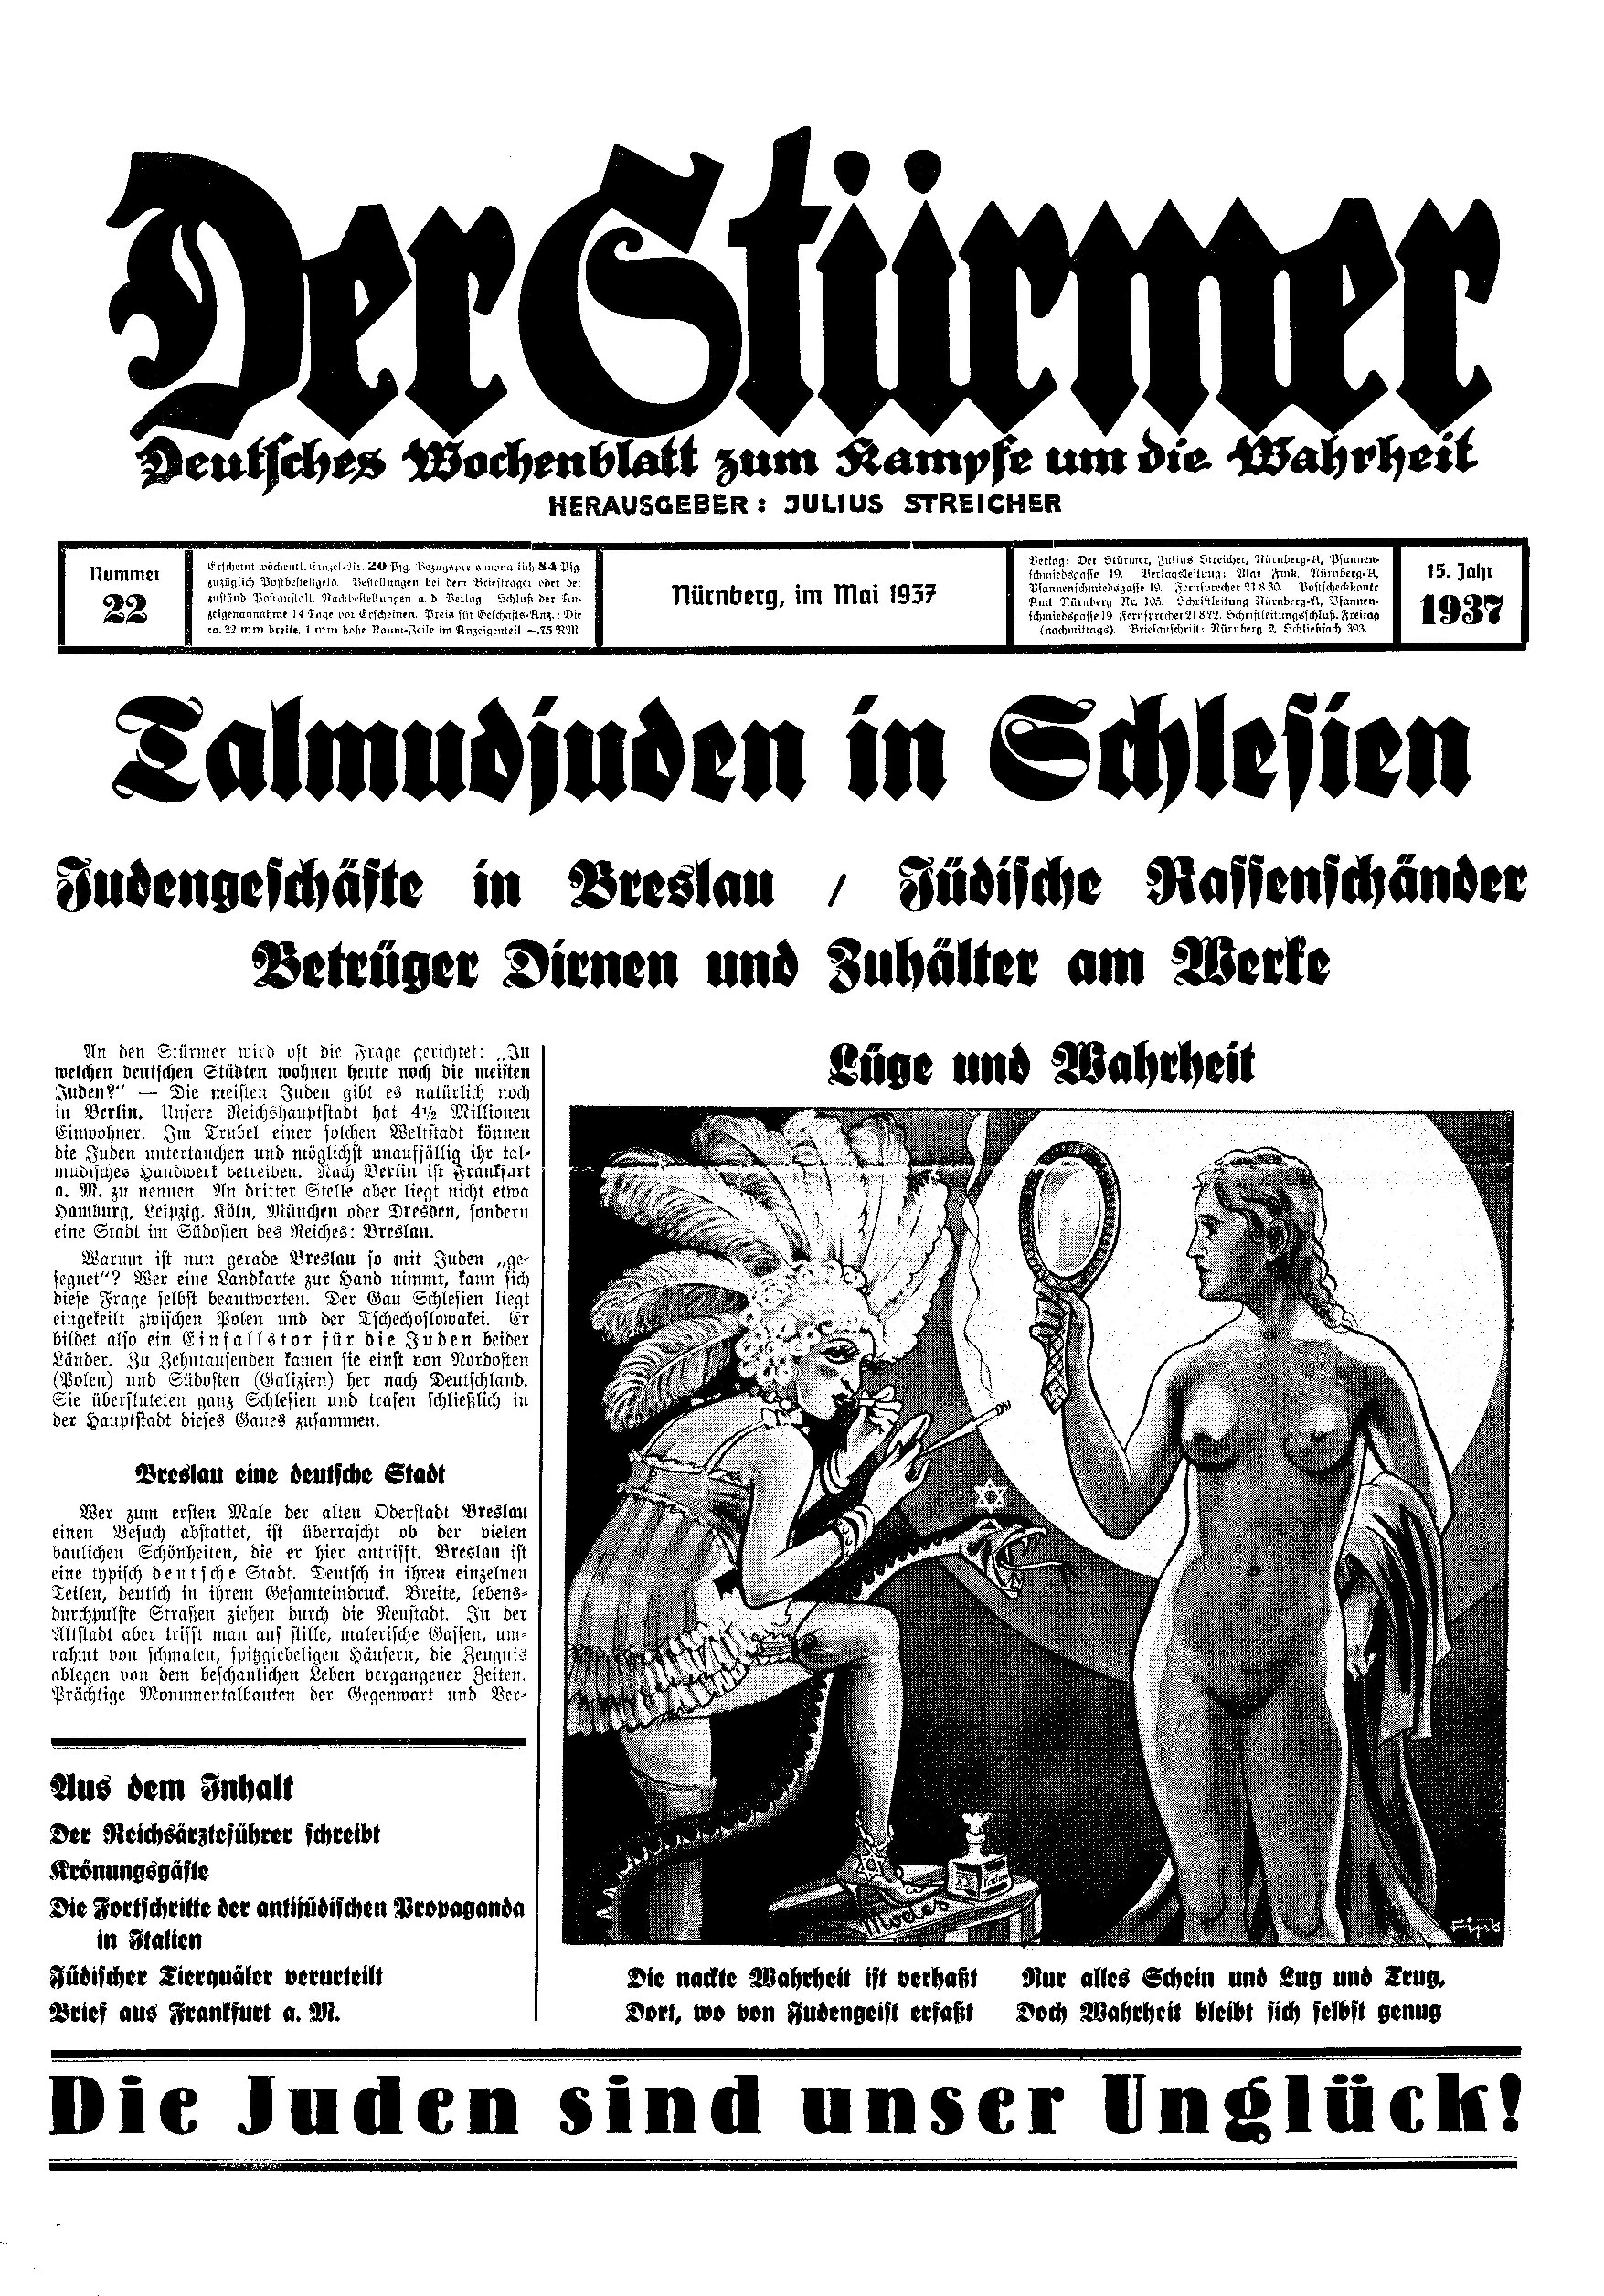 Der Stürmer - 1937 Nr. 22 - Talmudjuden in Schlesien